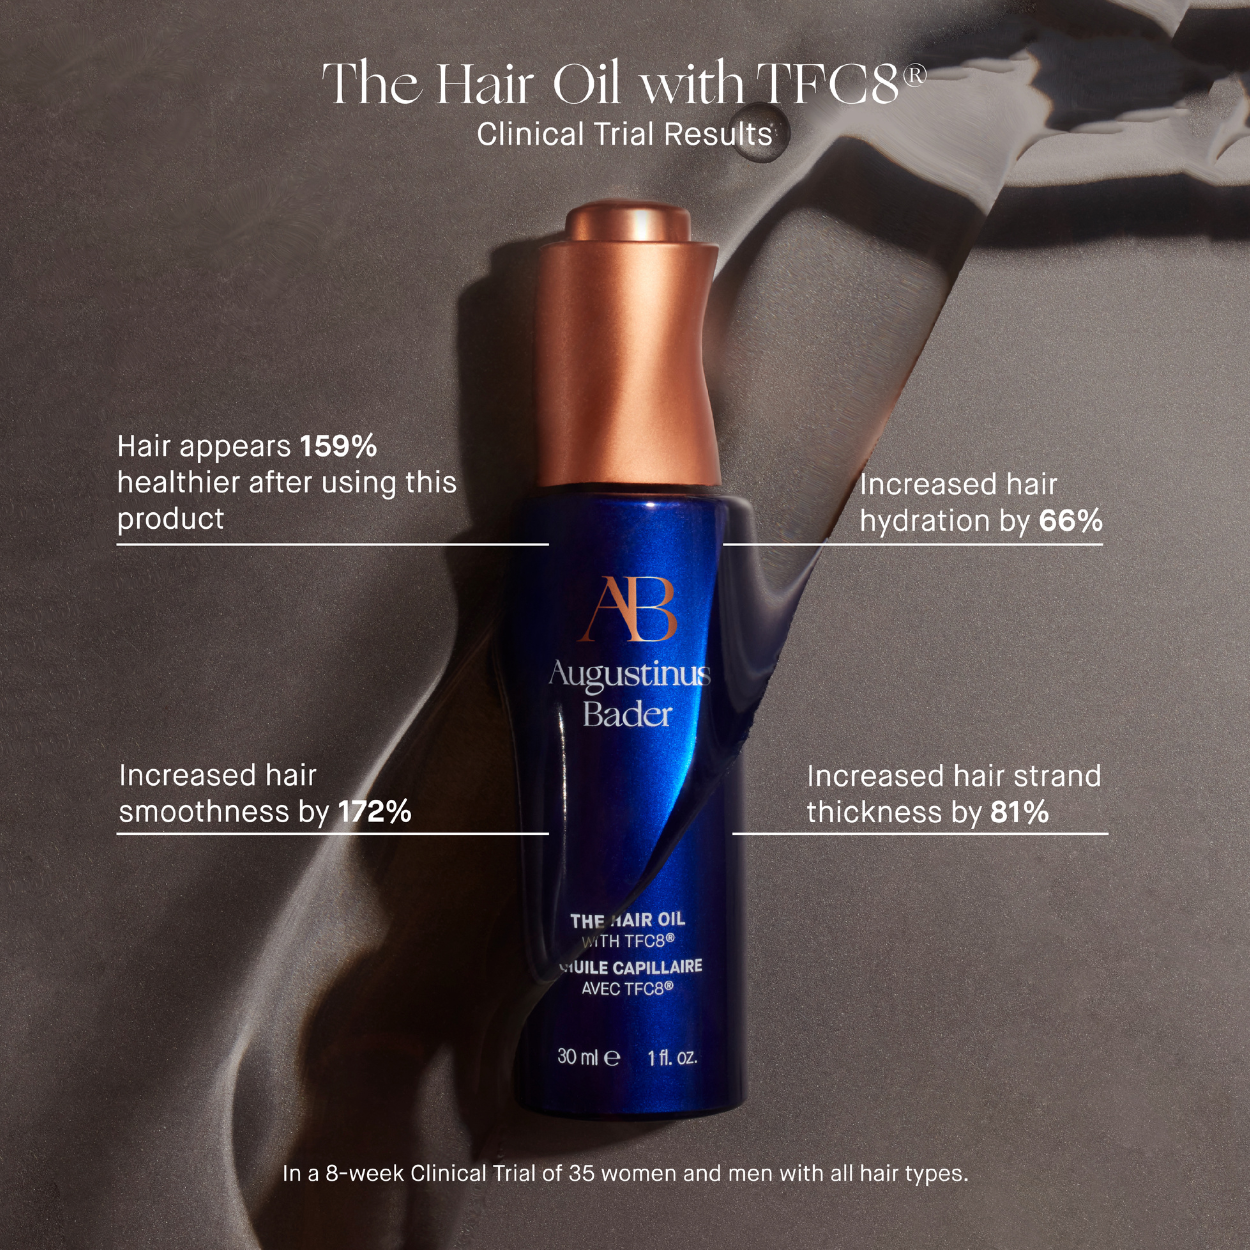 The Hair Oil